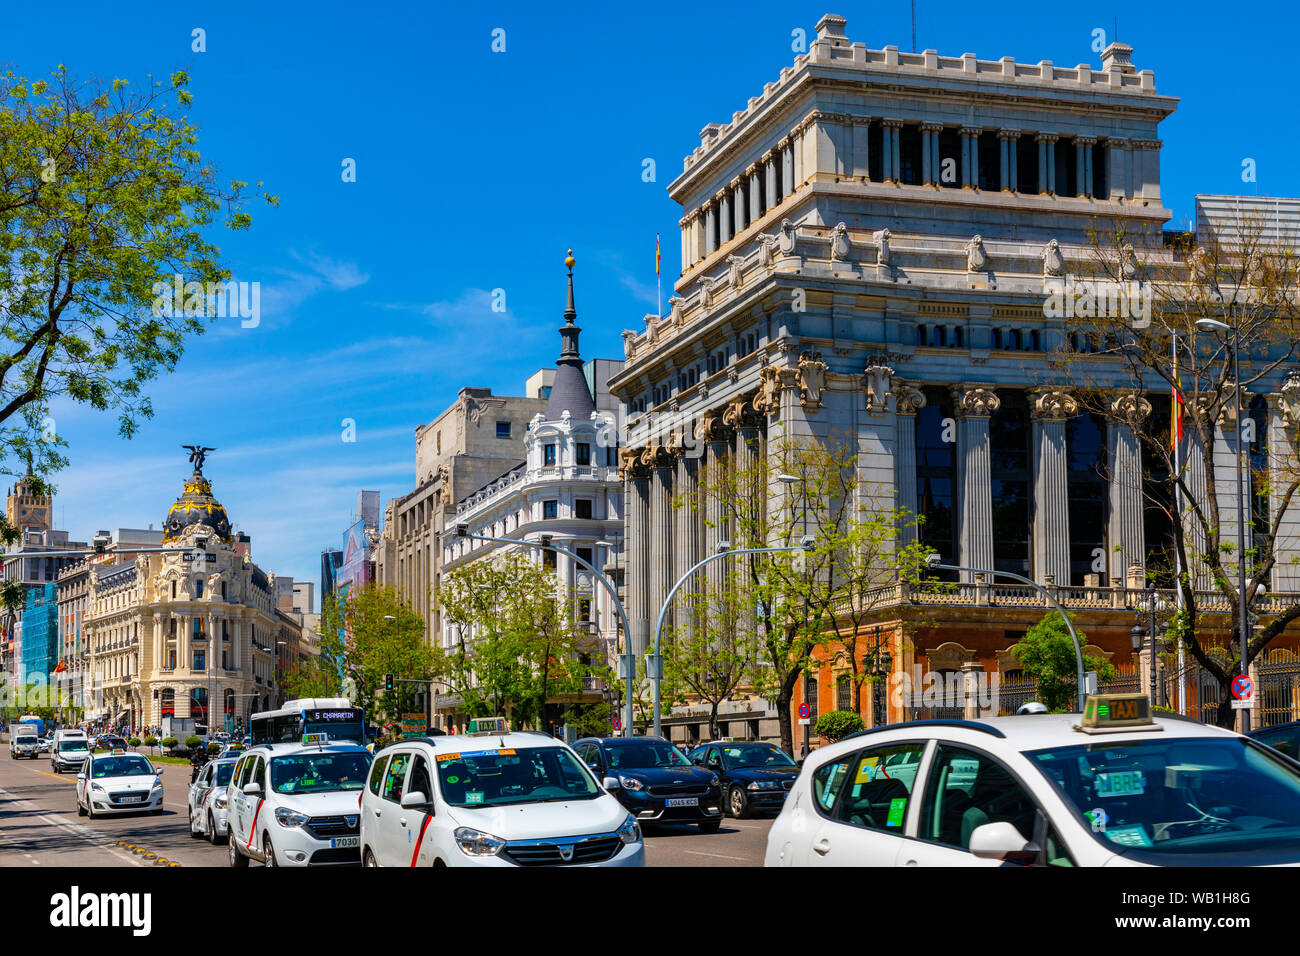 Edificio de las Cariatides, Madrid, Spanien, South West Europe Stockfoto